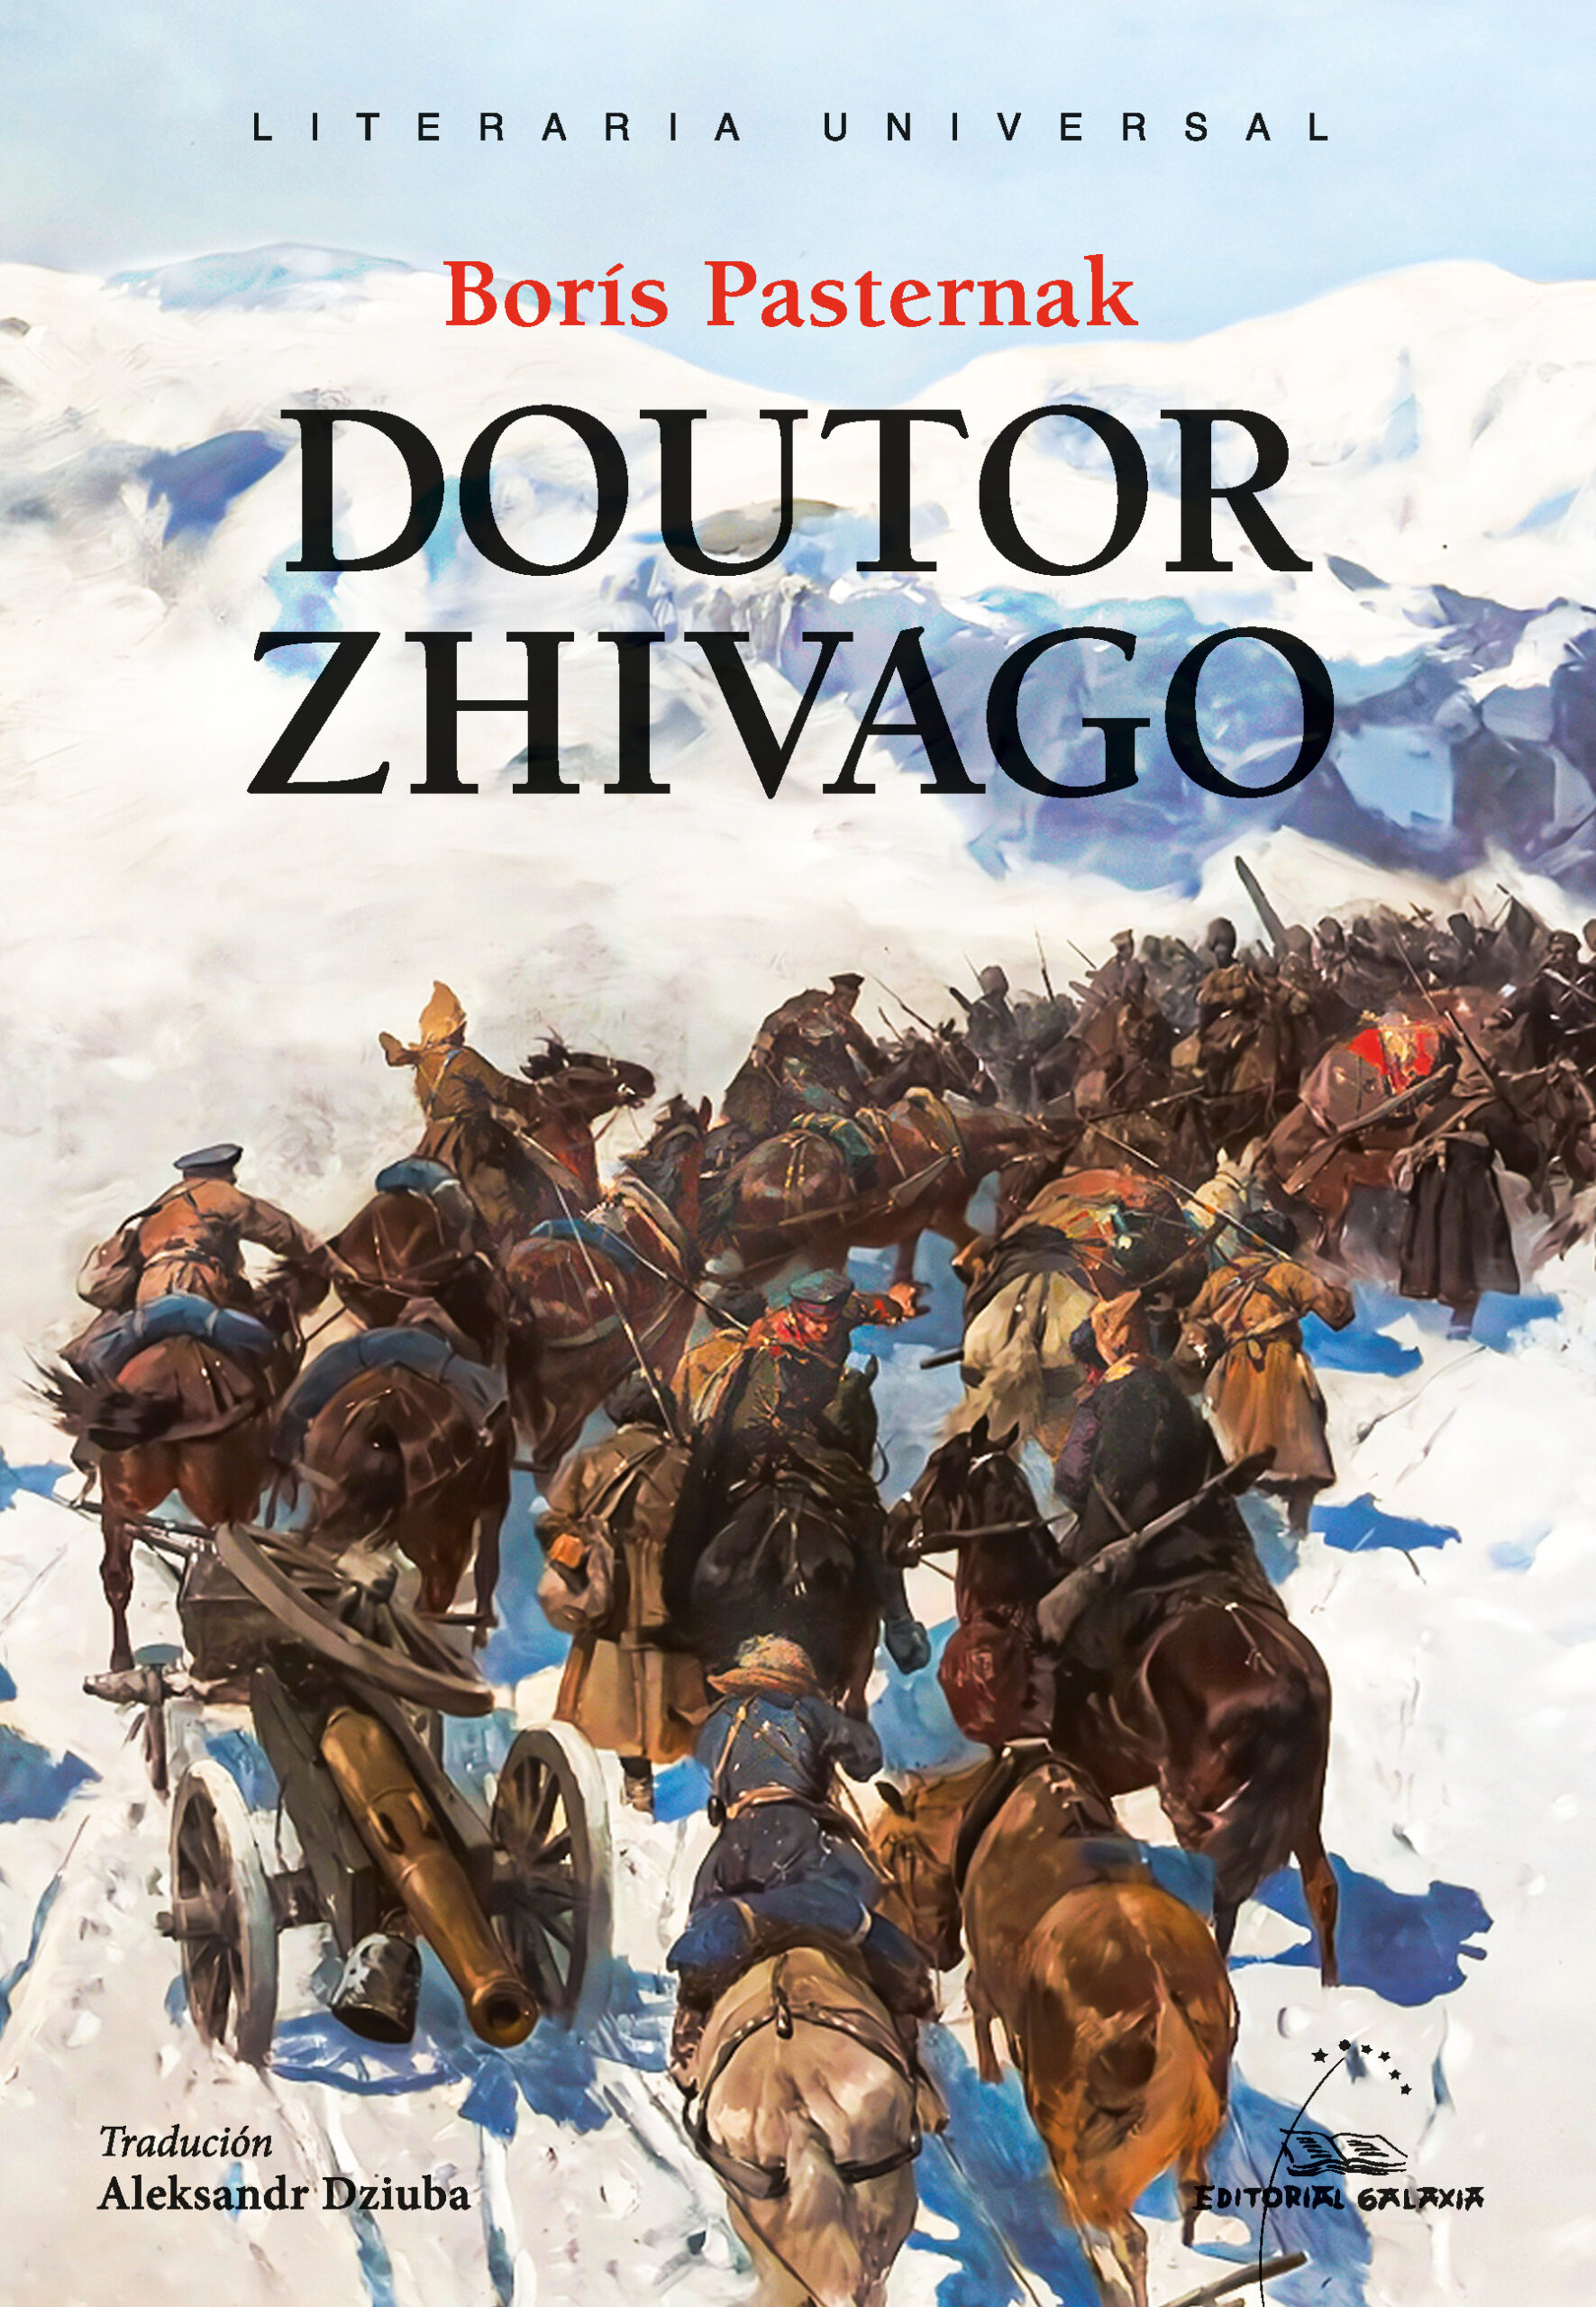 "Doutor Zhivago" xa dispoñible en galego